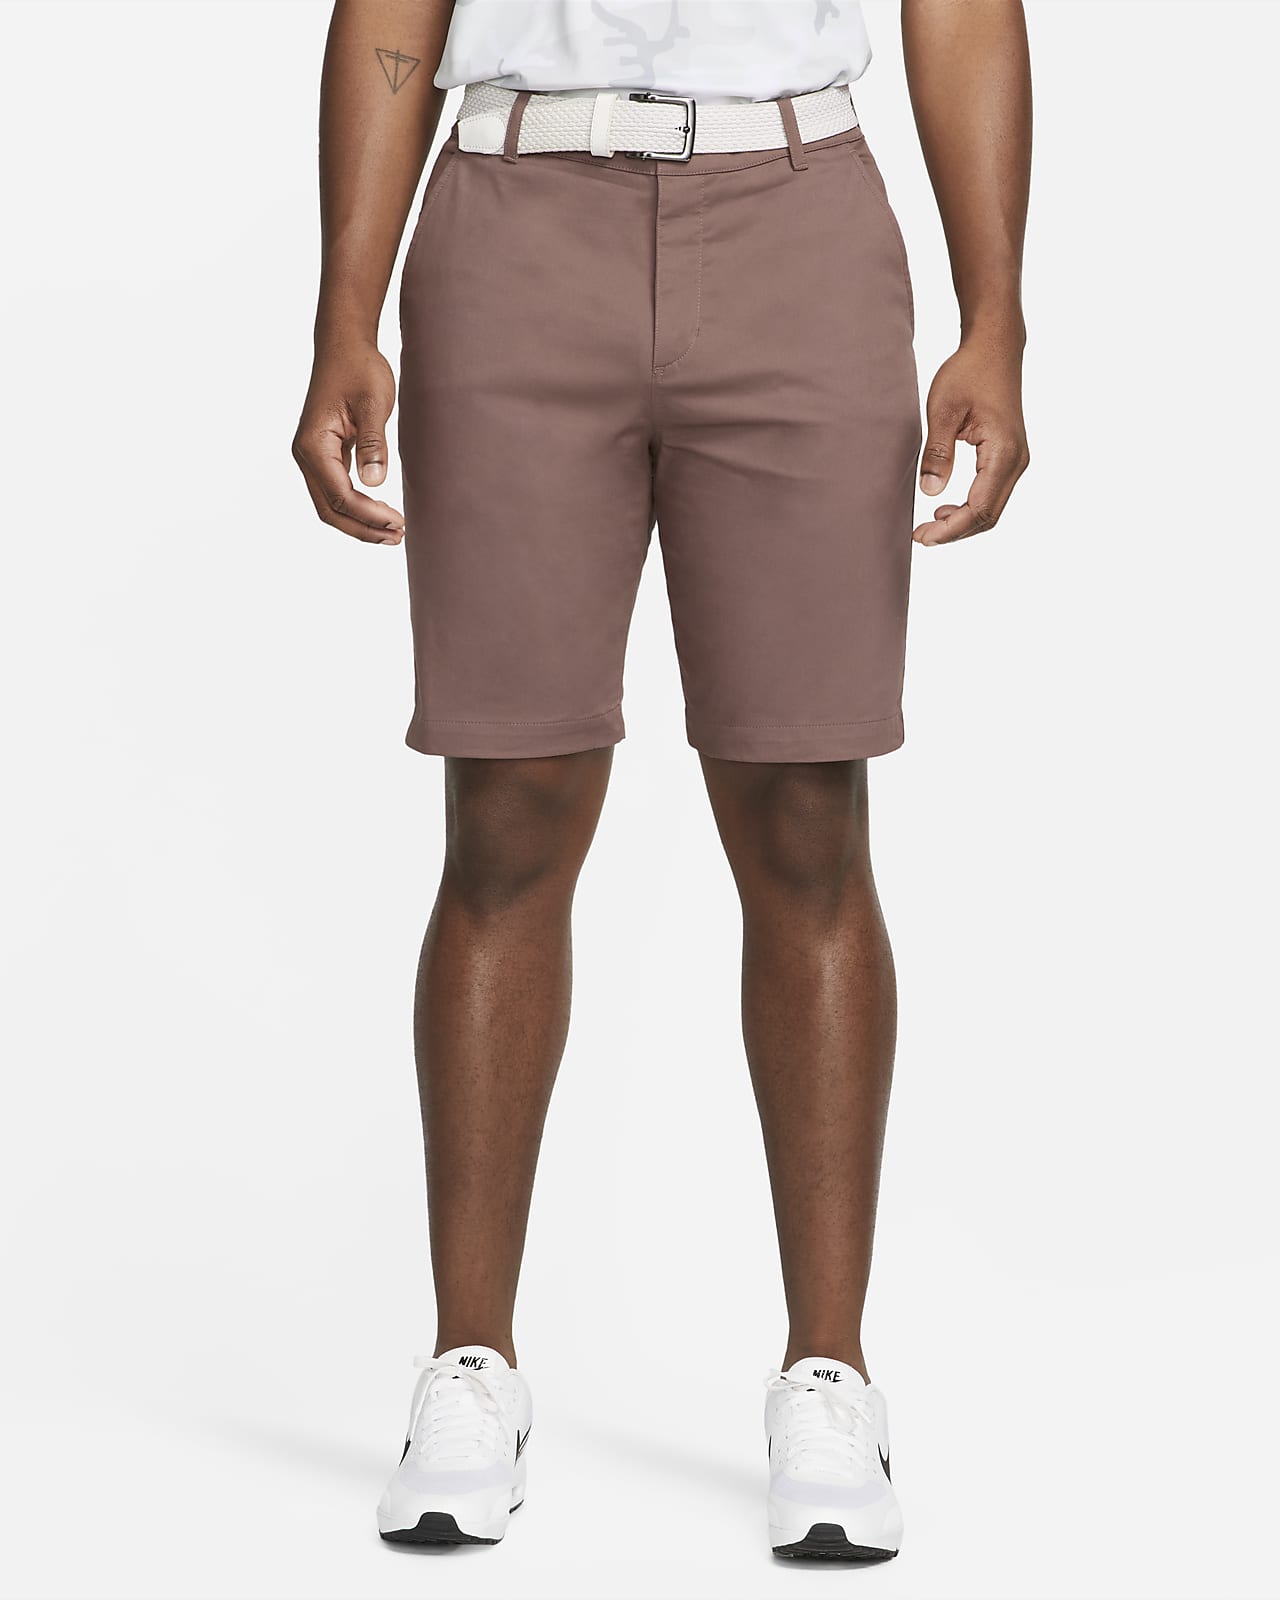 Shorts chinos de golf de 27 cm para hombre Nike Dri-FIT UV